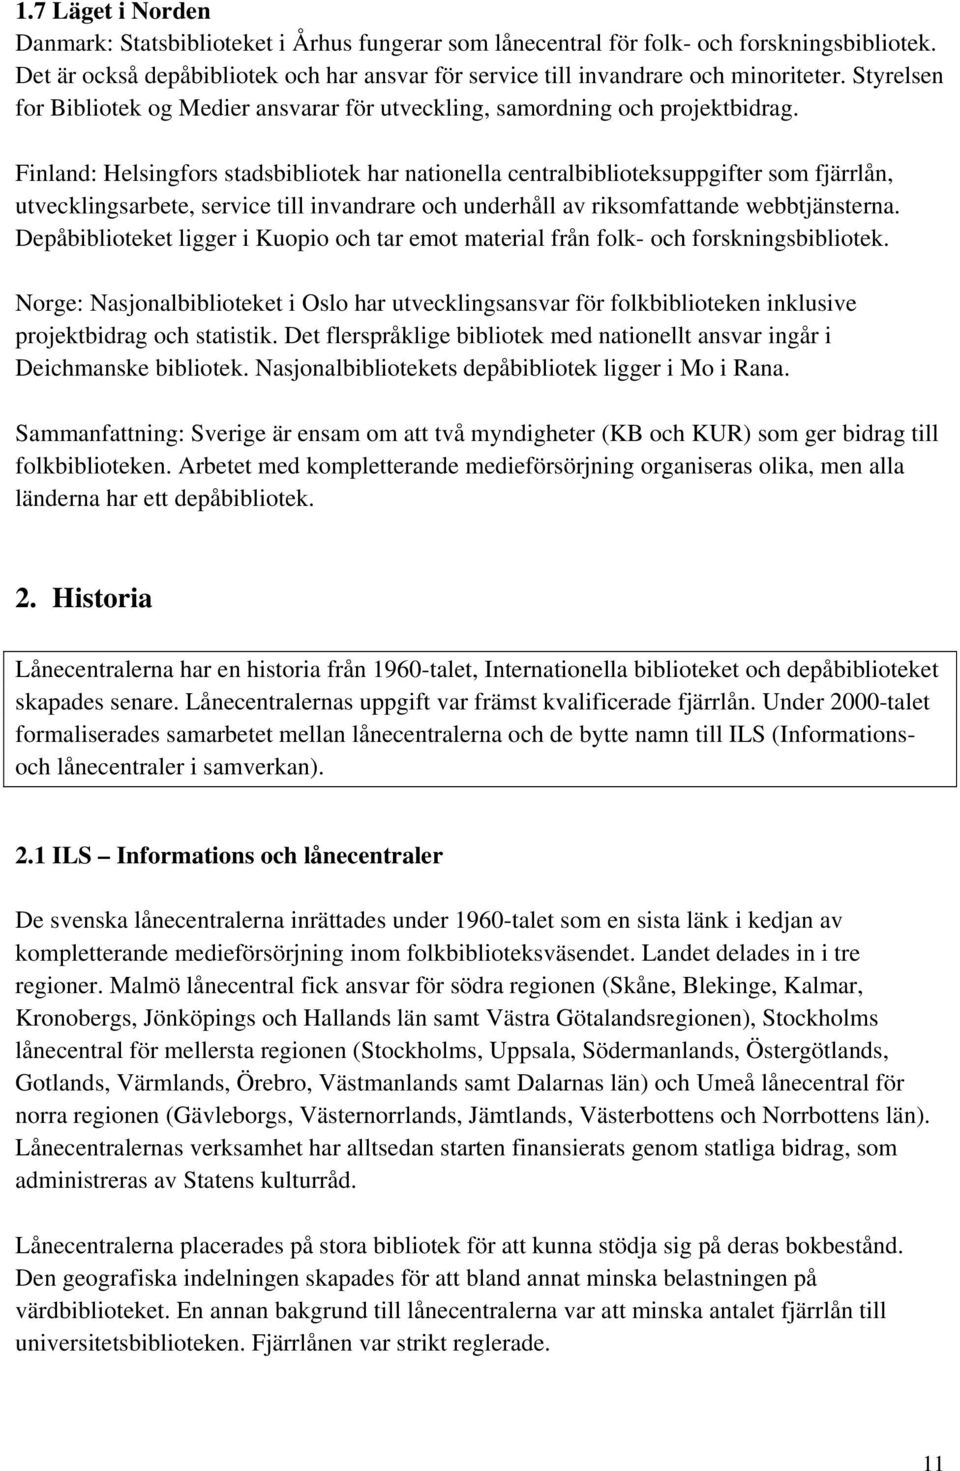 Finland: Helsingfors stadsbibliotek har nationella centralbiblioteksuppgifter som fjärrlån, utvecklingsarbete, service till invandrare och underhåll av riksomfattande webbtjänsterna.